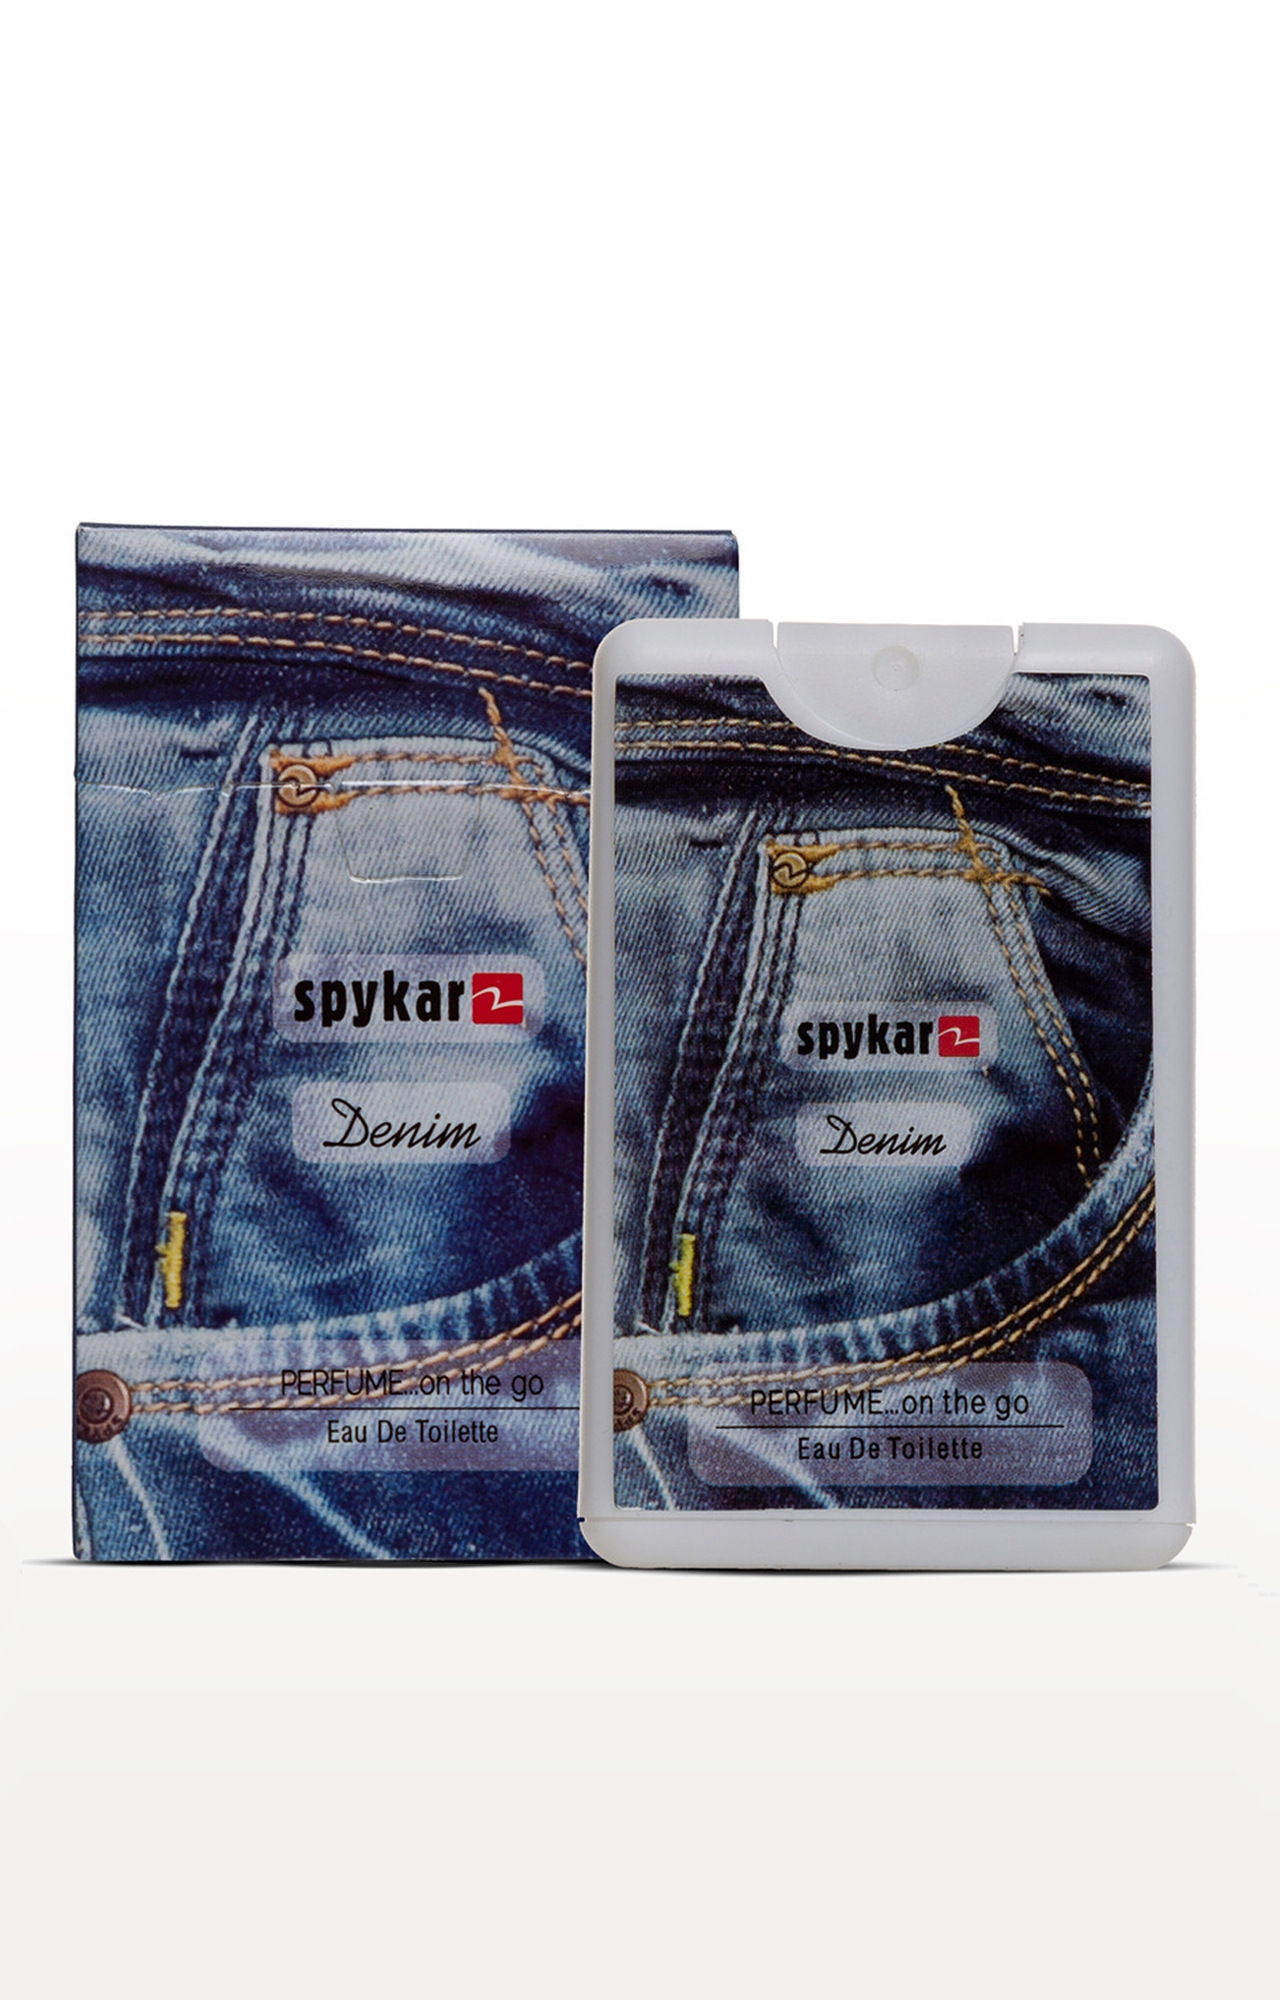 Spykar | Spykar Denim Pocket Perfume